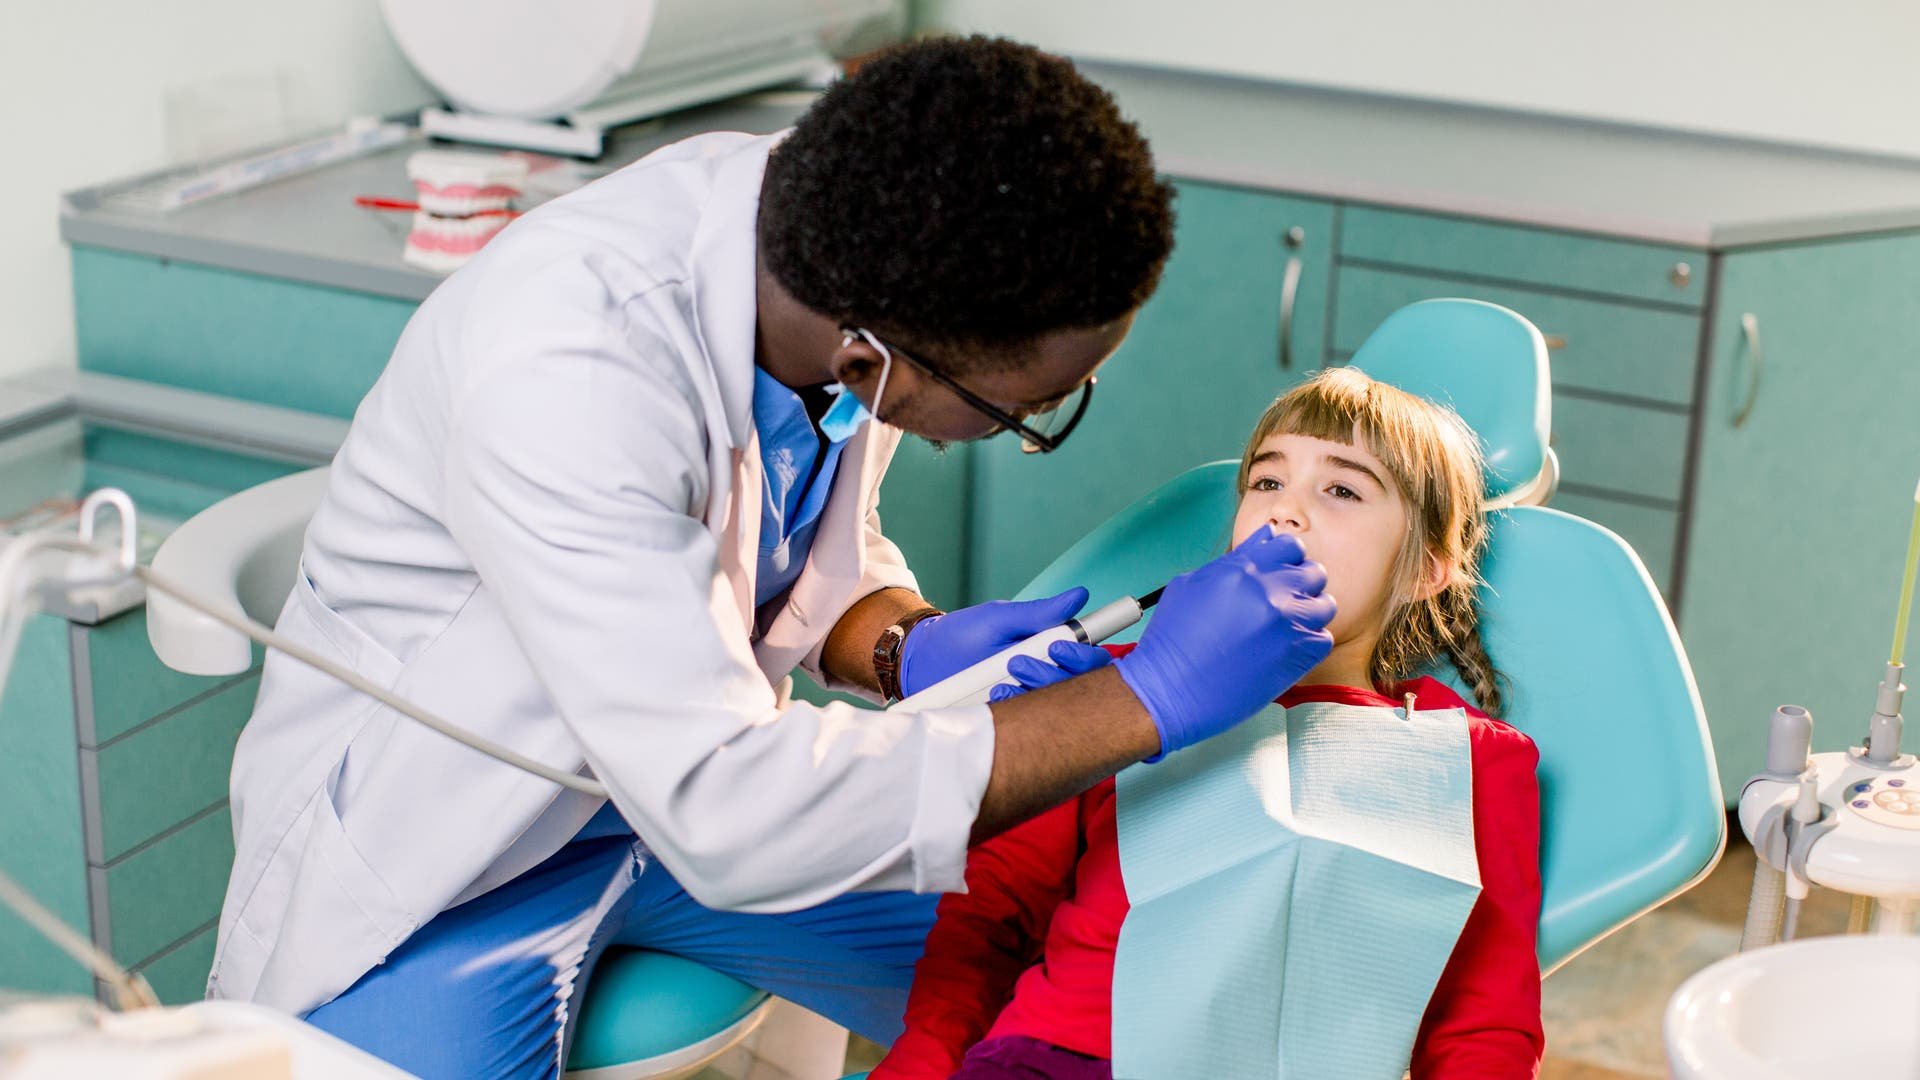 Besser Vorsorgen: Was passiert bei der Zahnvorsorge?